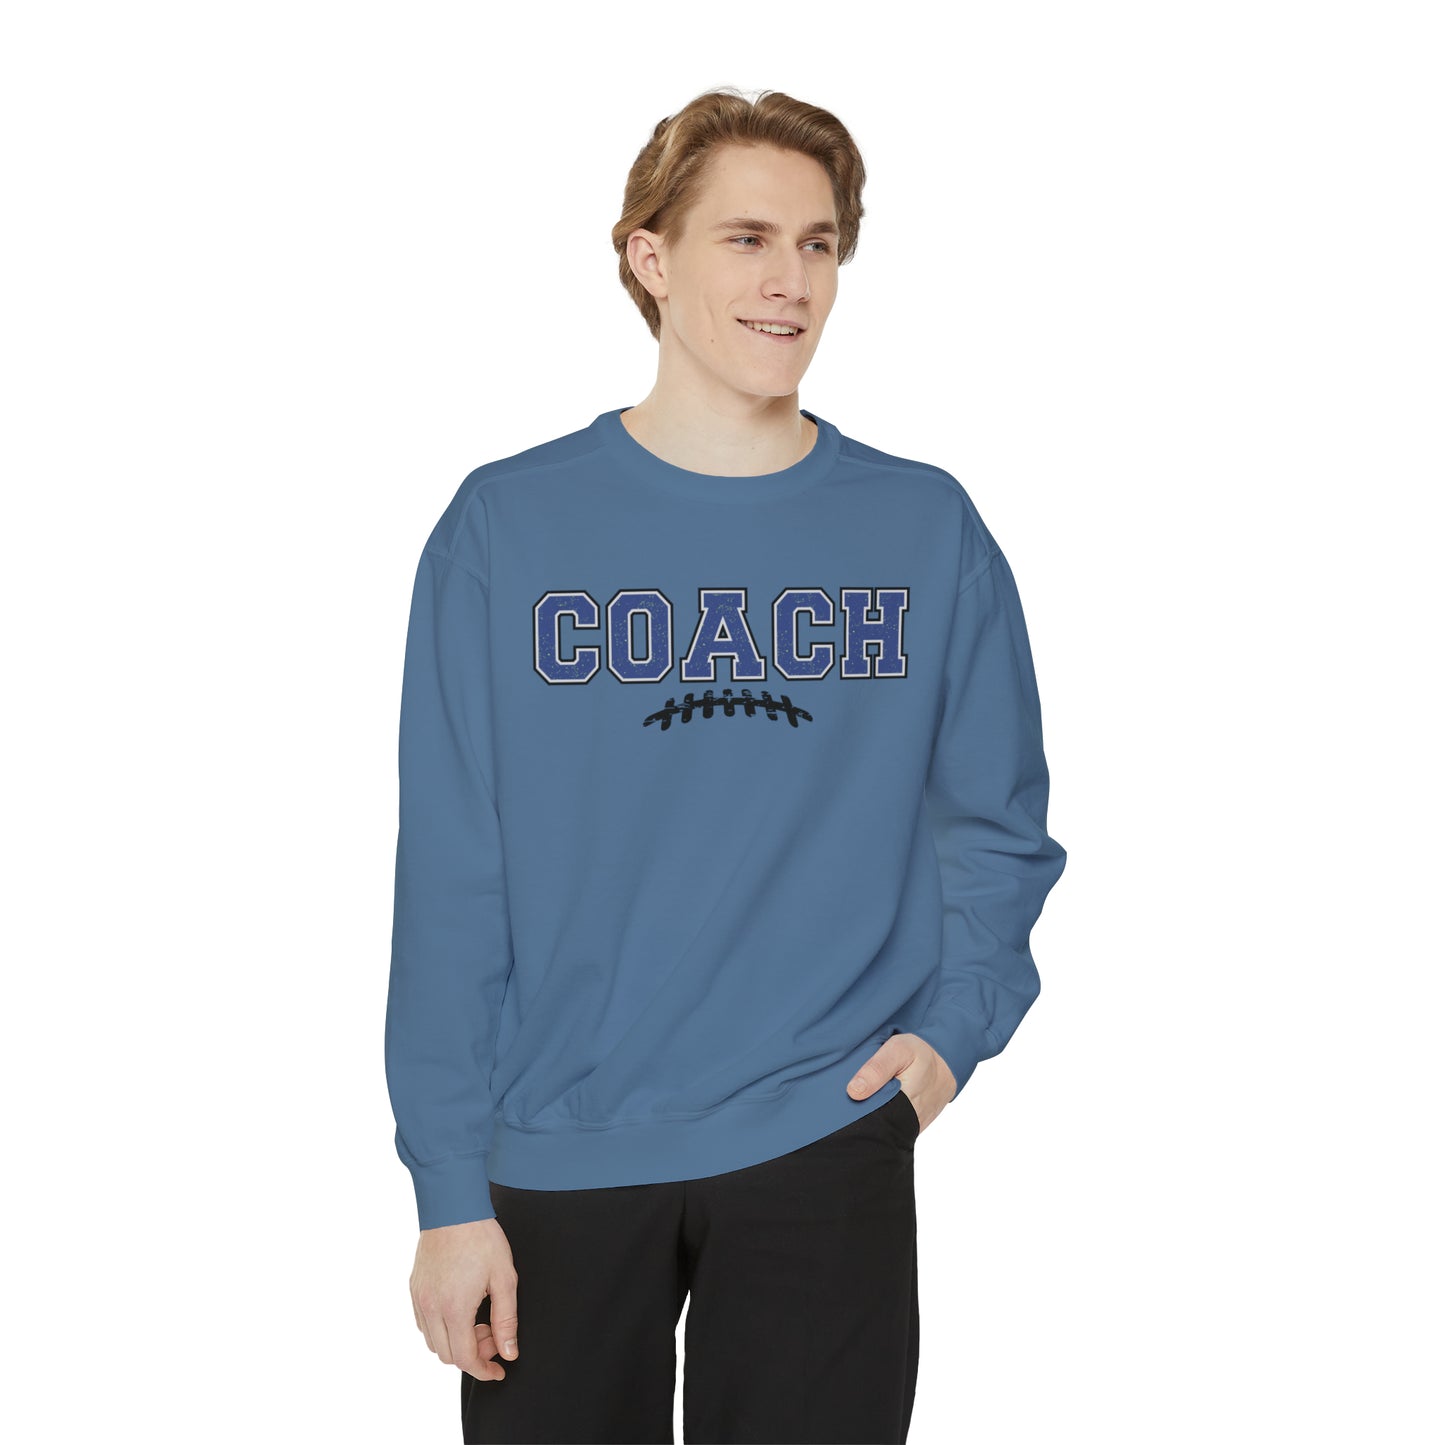 Gridiron Glory Premium Coach Men's Comfort Colors Sweatshirt